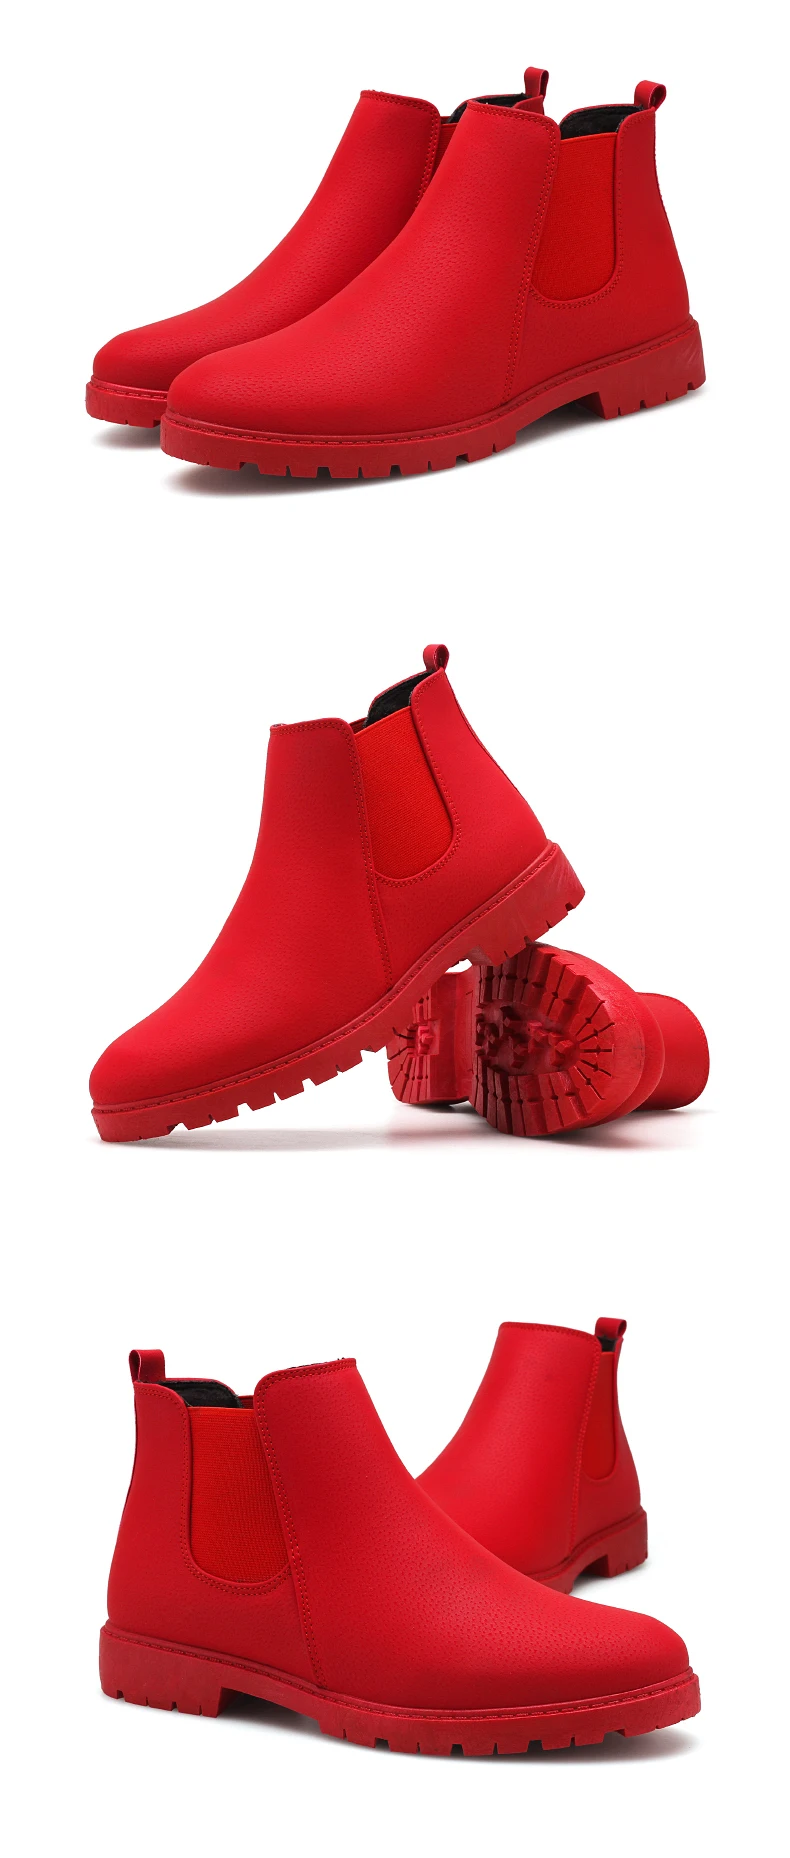 YEINSHAARS/черные, серые, красные модные повседневные мужские ботинки челси из натуральной кожи; качественные мужские ботинки в байкерском стиле без шнуровки